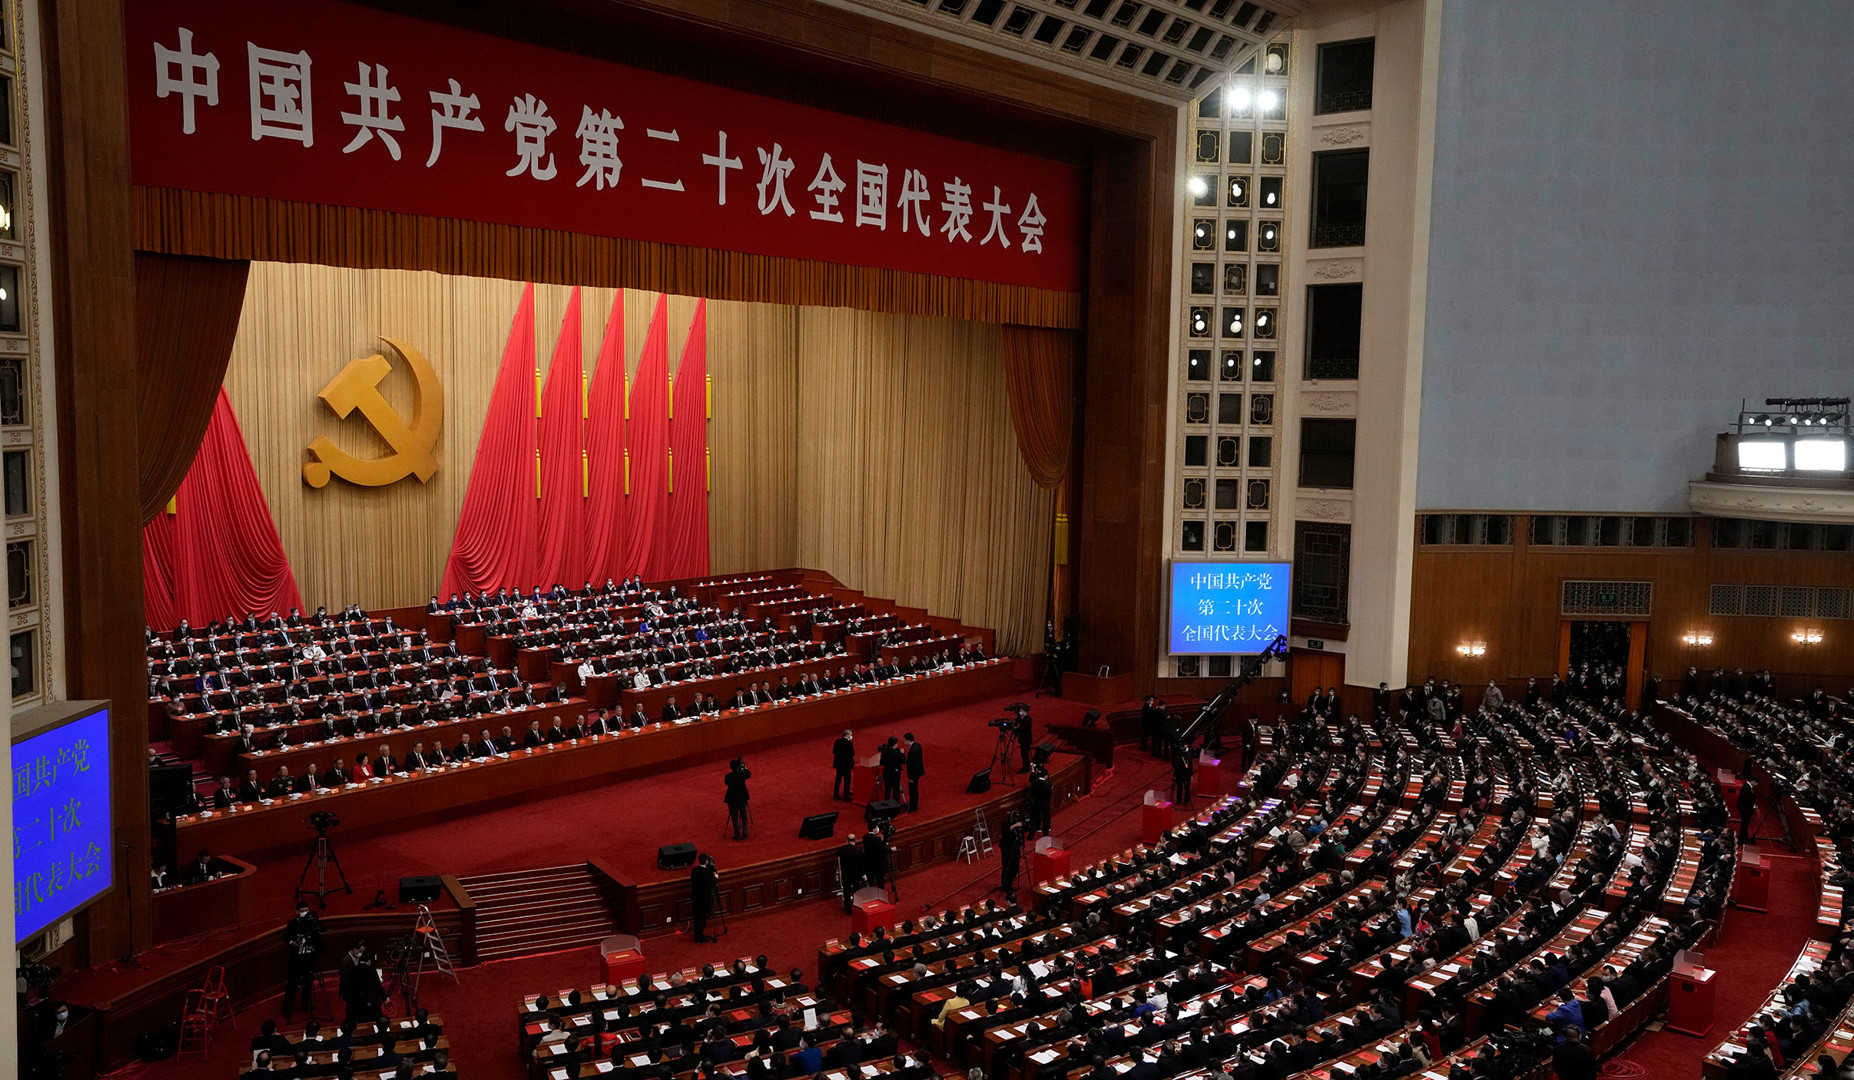 Պեկինում ավարտվել է Չինաստանի կոմունիստական կուսակցության 20-րդ նստաշրջանը